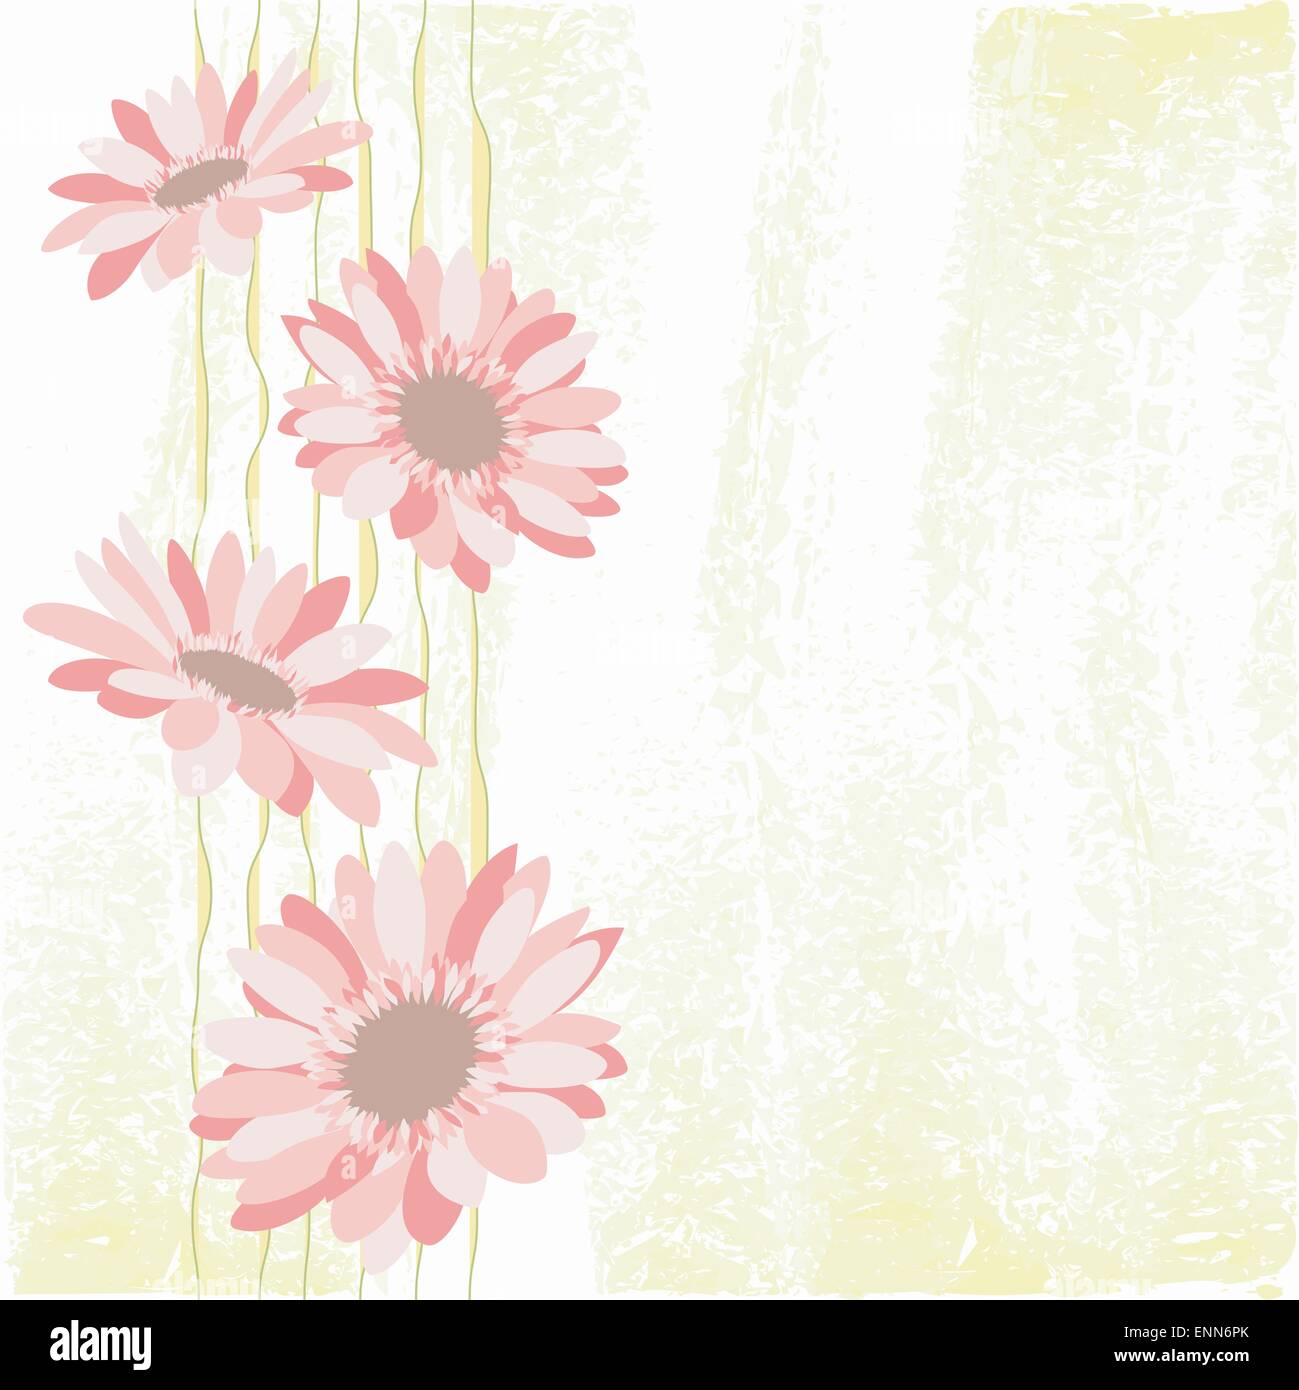 Springtime Colorful Daisy Flower Stock Vector